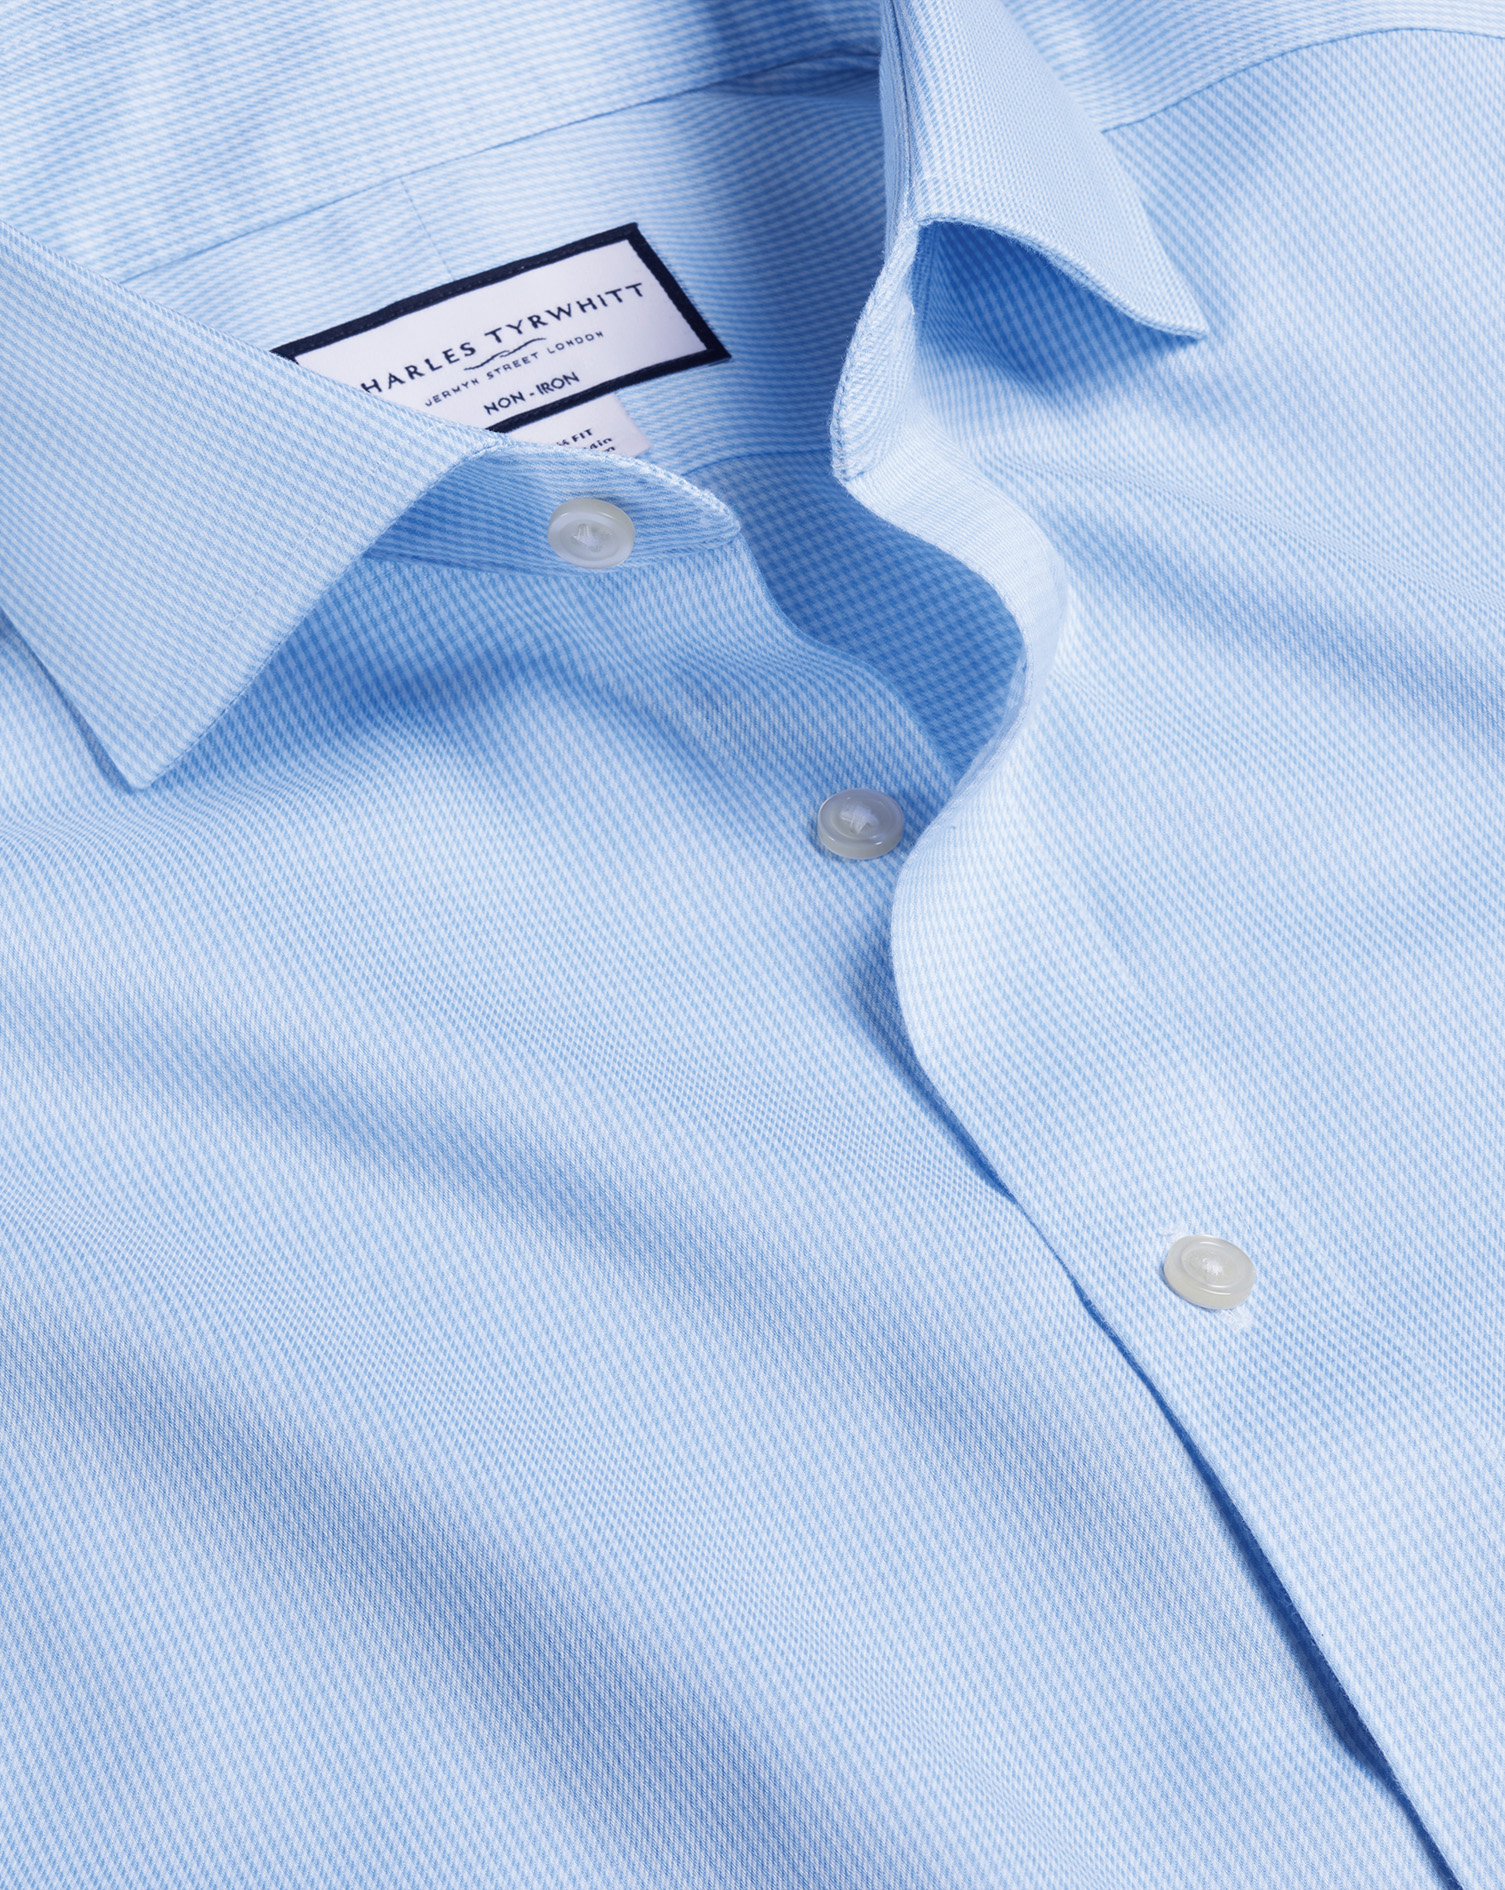 Men's Charles Tyrwhitt Cutaway Collar Non-Iron Puppytooth Dress Shirt - Sky Blue Single Cuff Size Me